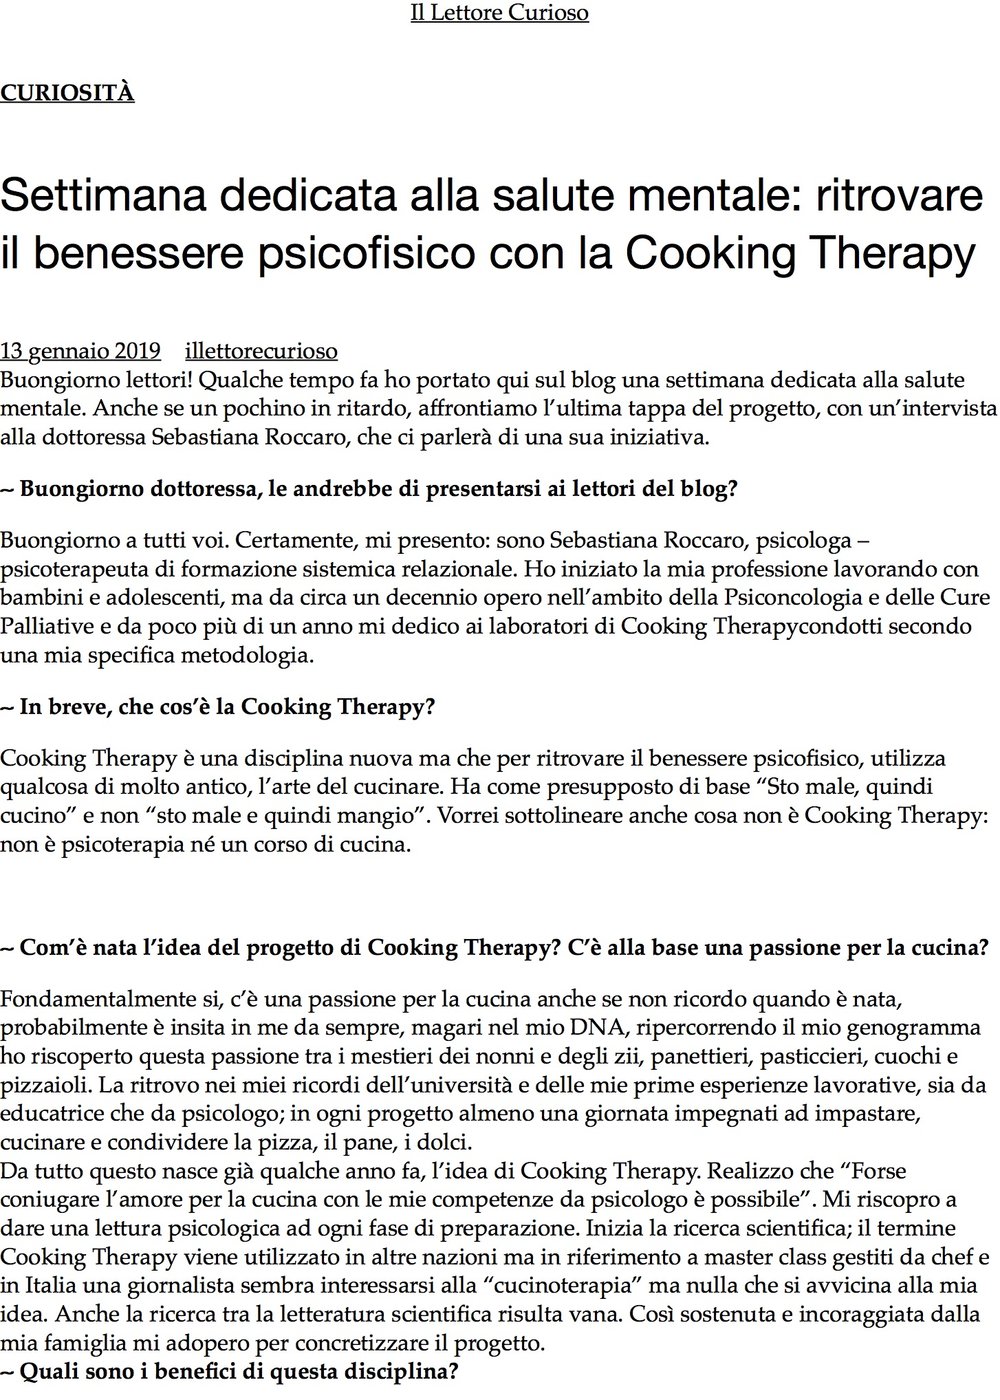 Settimana dedicata alla salute mentale: ritrovare il benessere psicofisico con la Cooking Therapy – .jpg